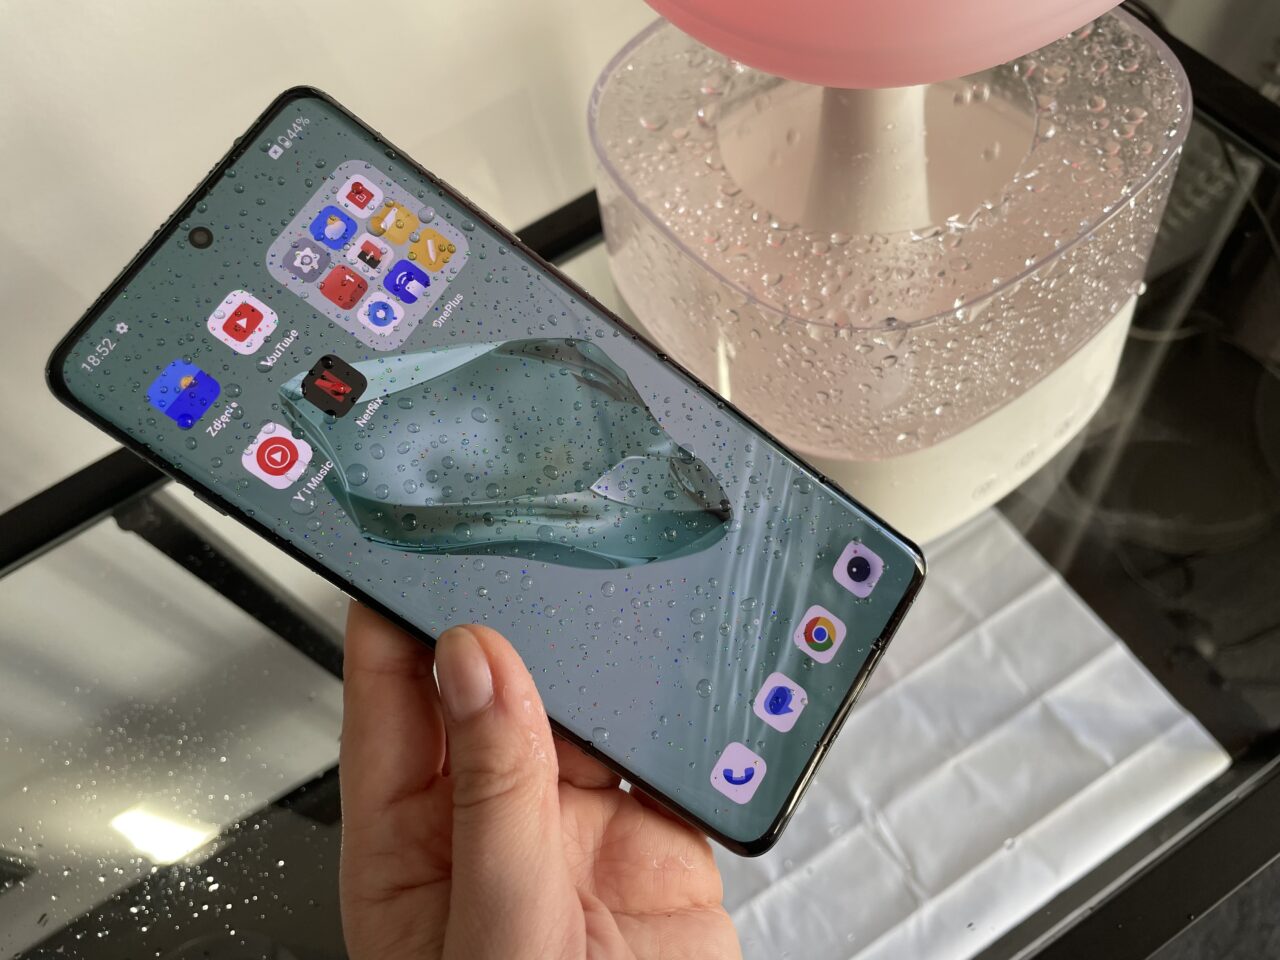 Osoba trzyma smartfon z aktywnym ekranem pokazującym ikony aplikacji na tle, które wygląda jak mokra powierzchnia z kroplami wody.